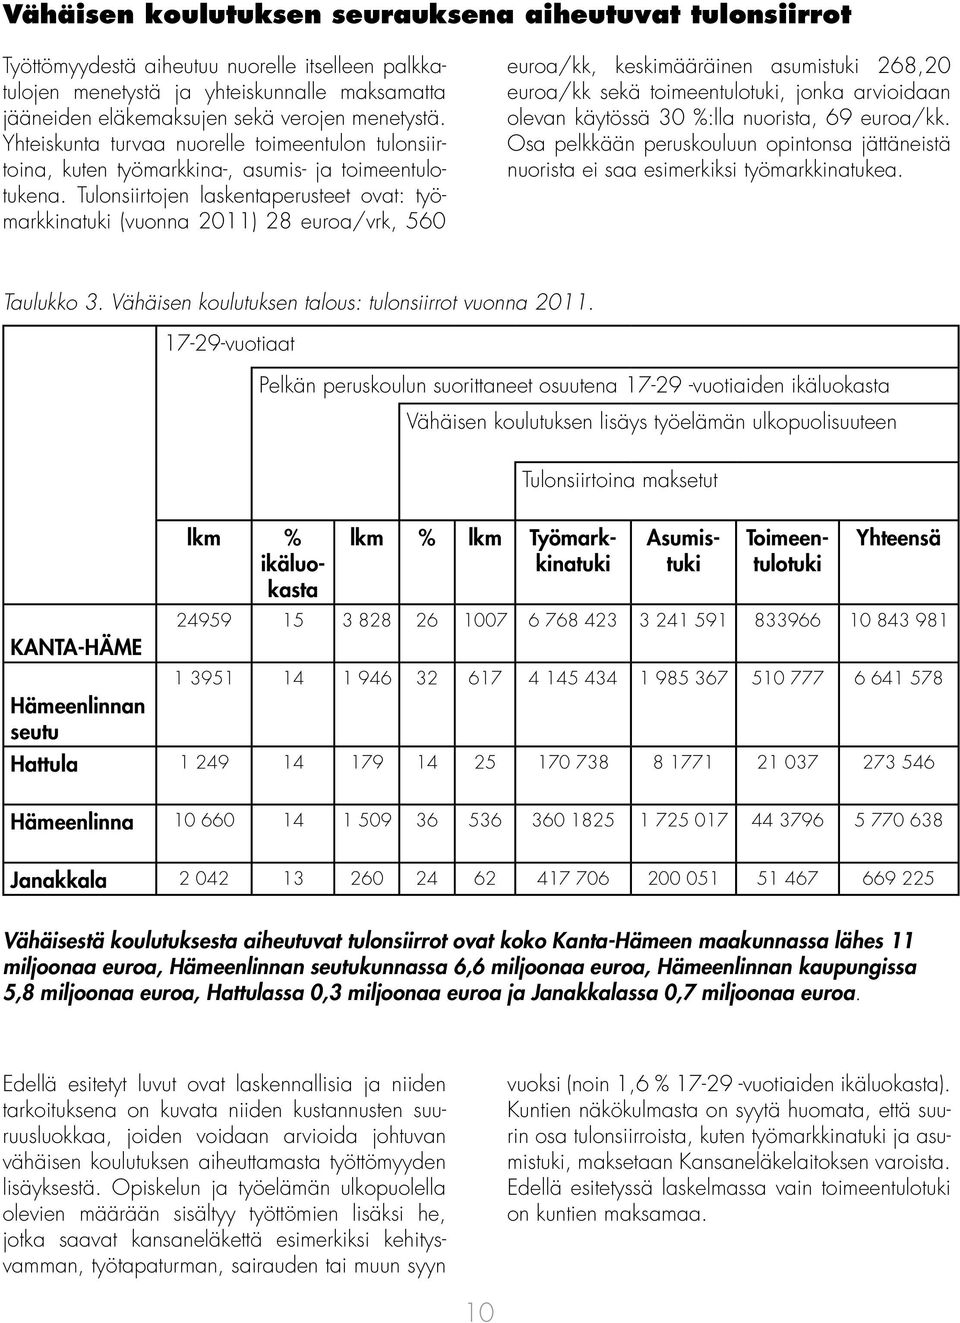 Tulonsiirtojen laskentaperusteet ovat: työmarkkinatuki (vuonna 2011) 28 euroa/vrk, 560 euroa/kk, keskimääräinen asumistuki 268,20 euroa/kk sekä toimeentulotuki, jonka arvioidaan olevan käytössä 30